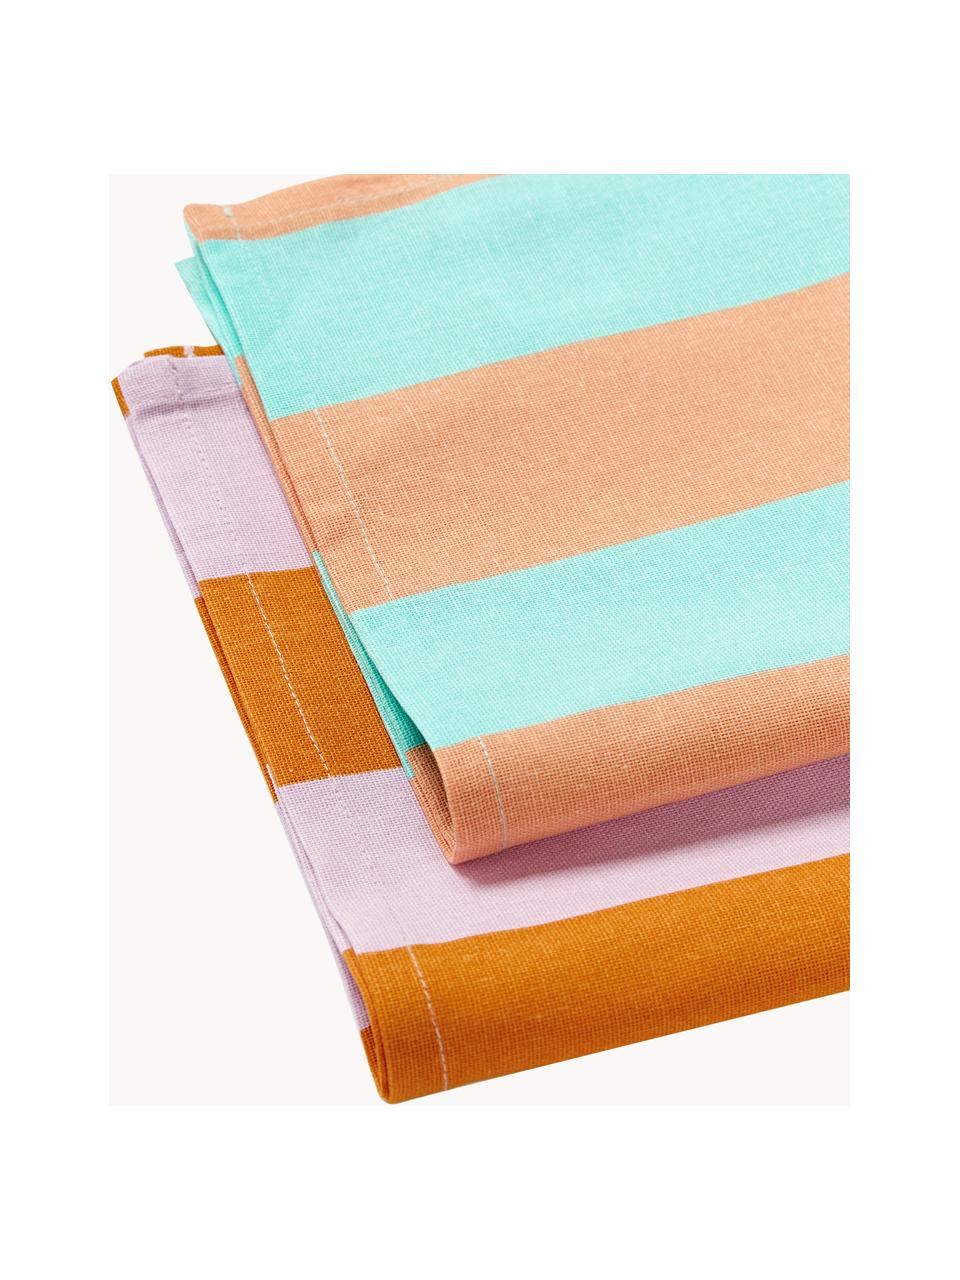 Pruhované textilné servítky Juno, 8 ks, 100 %  bavlna, Oranžová, tyrkysová, Š 45 x V 45 cm